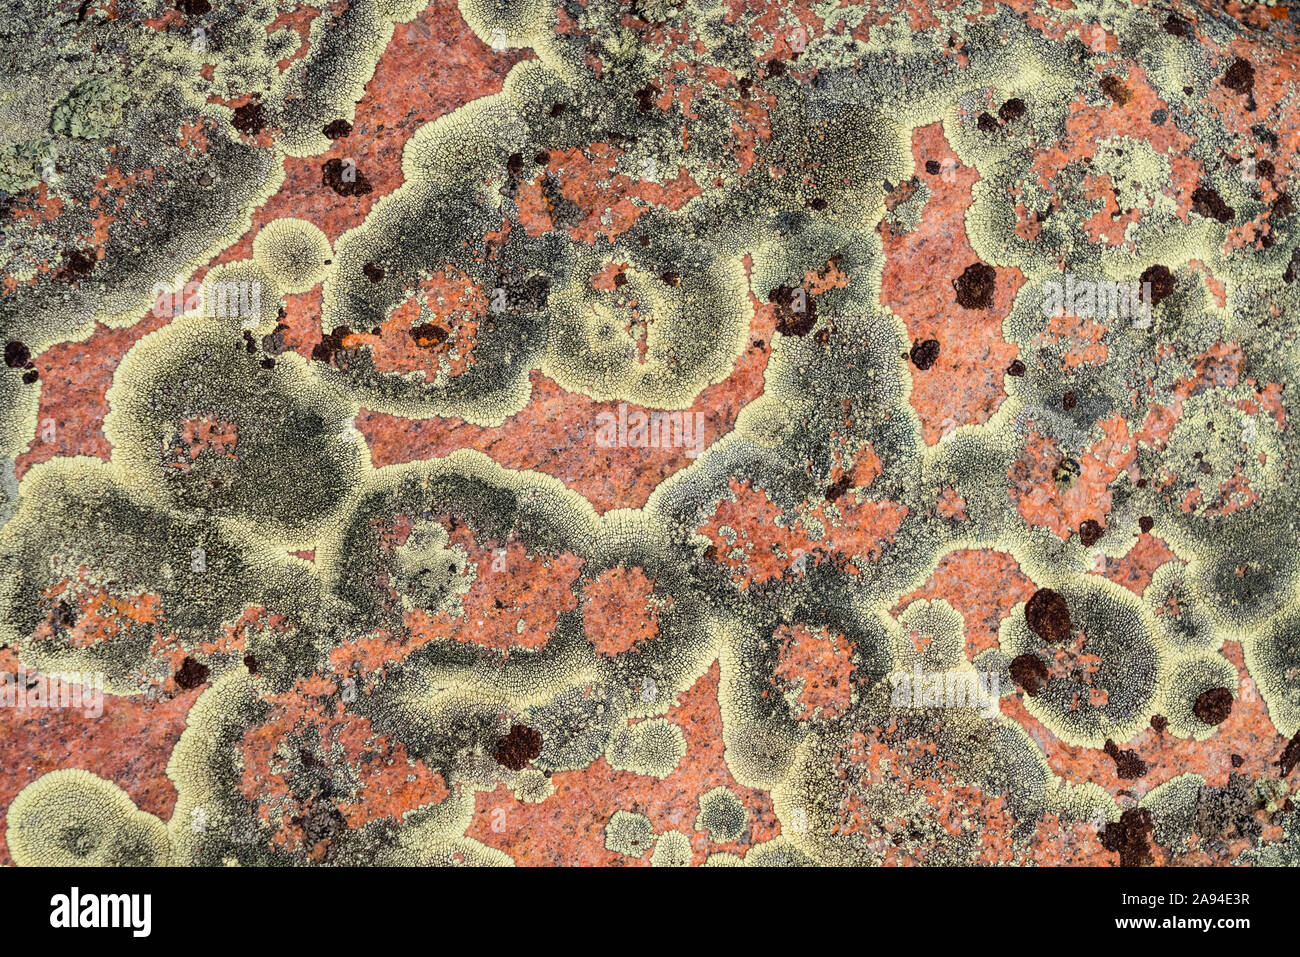 Détail en gros plan du lichen sur la surface d'une roche; Saskatchewan, Canada Banque D'Images